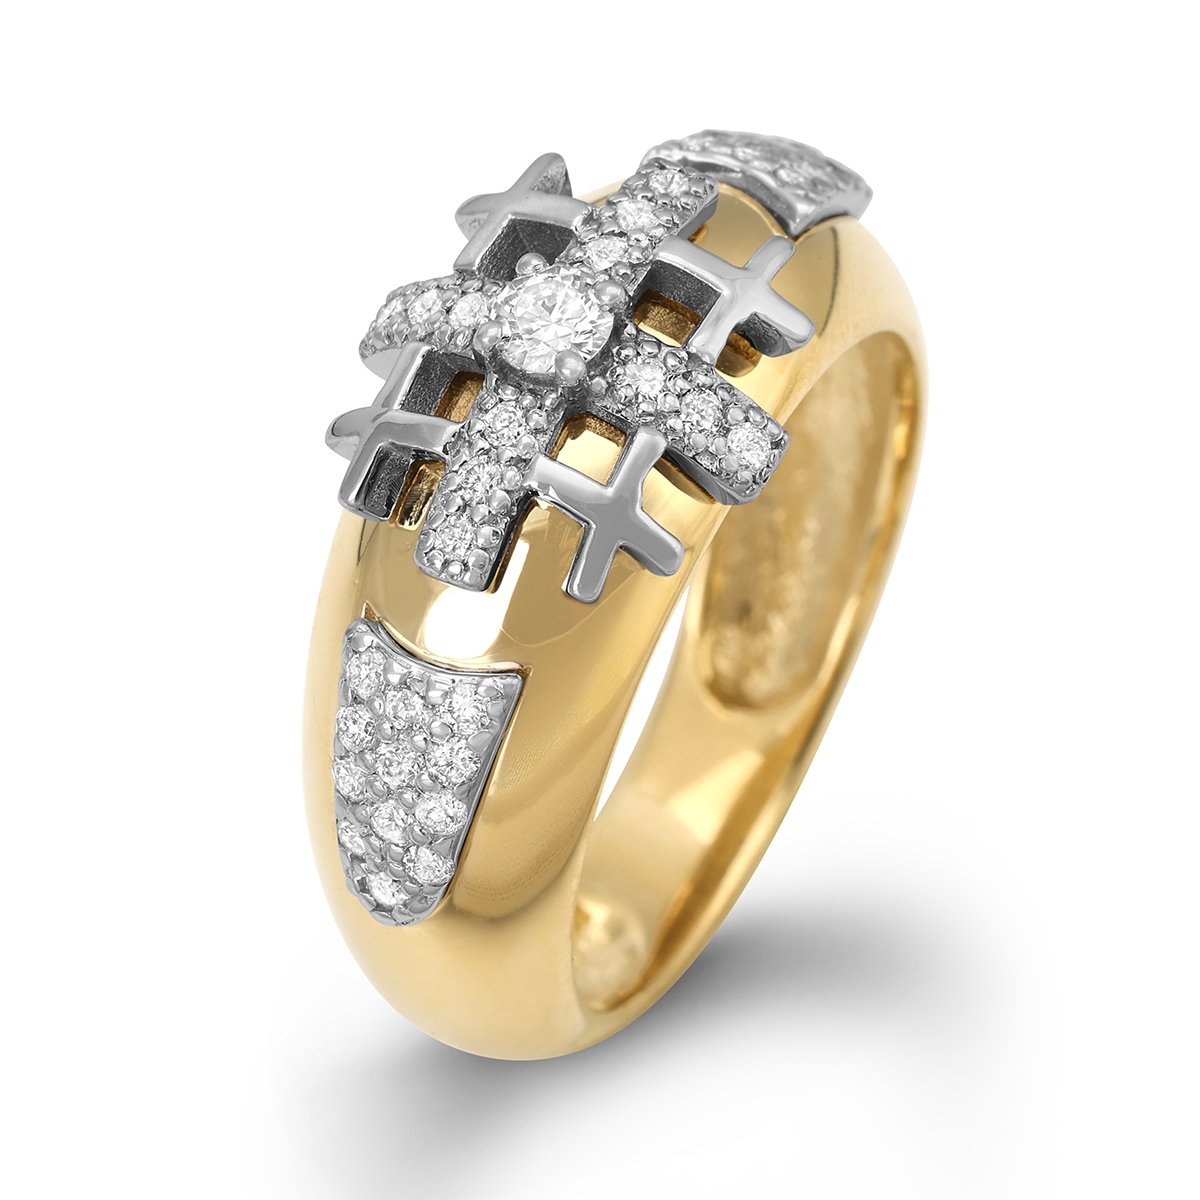 Anbinder Jewelry 14K Yellow Gold and Diamond Women's Jerusalem Cross Ring  - 1